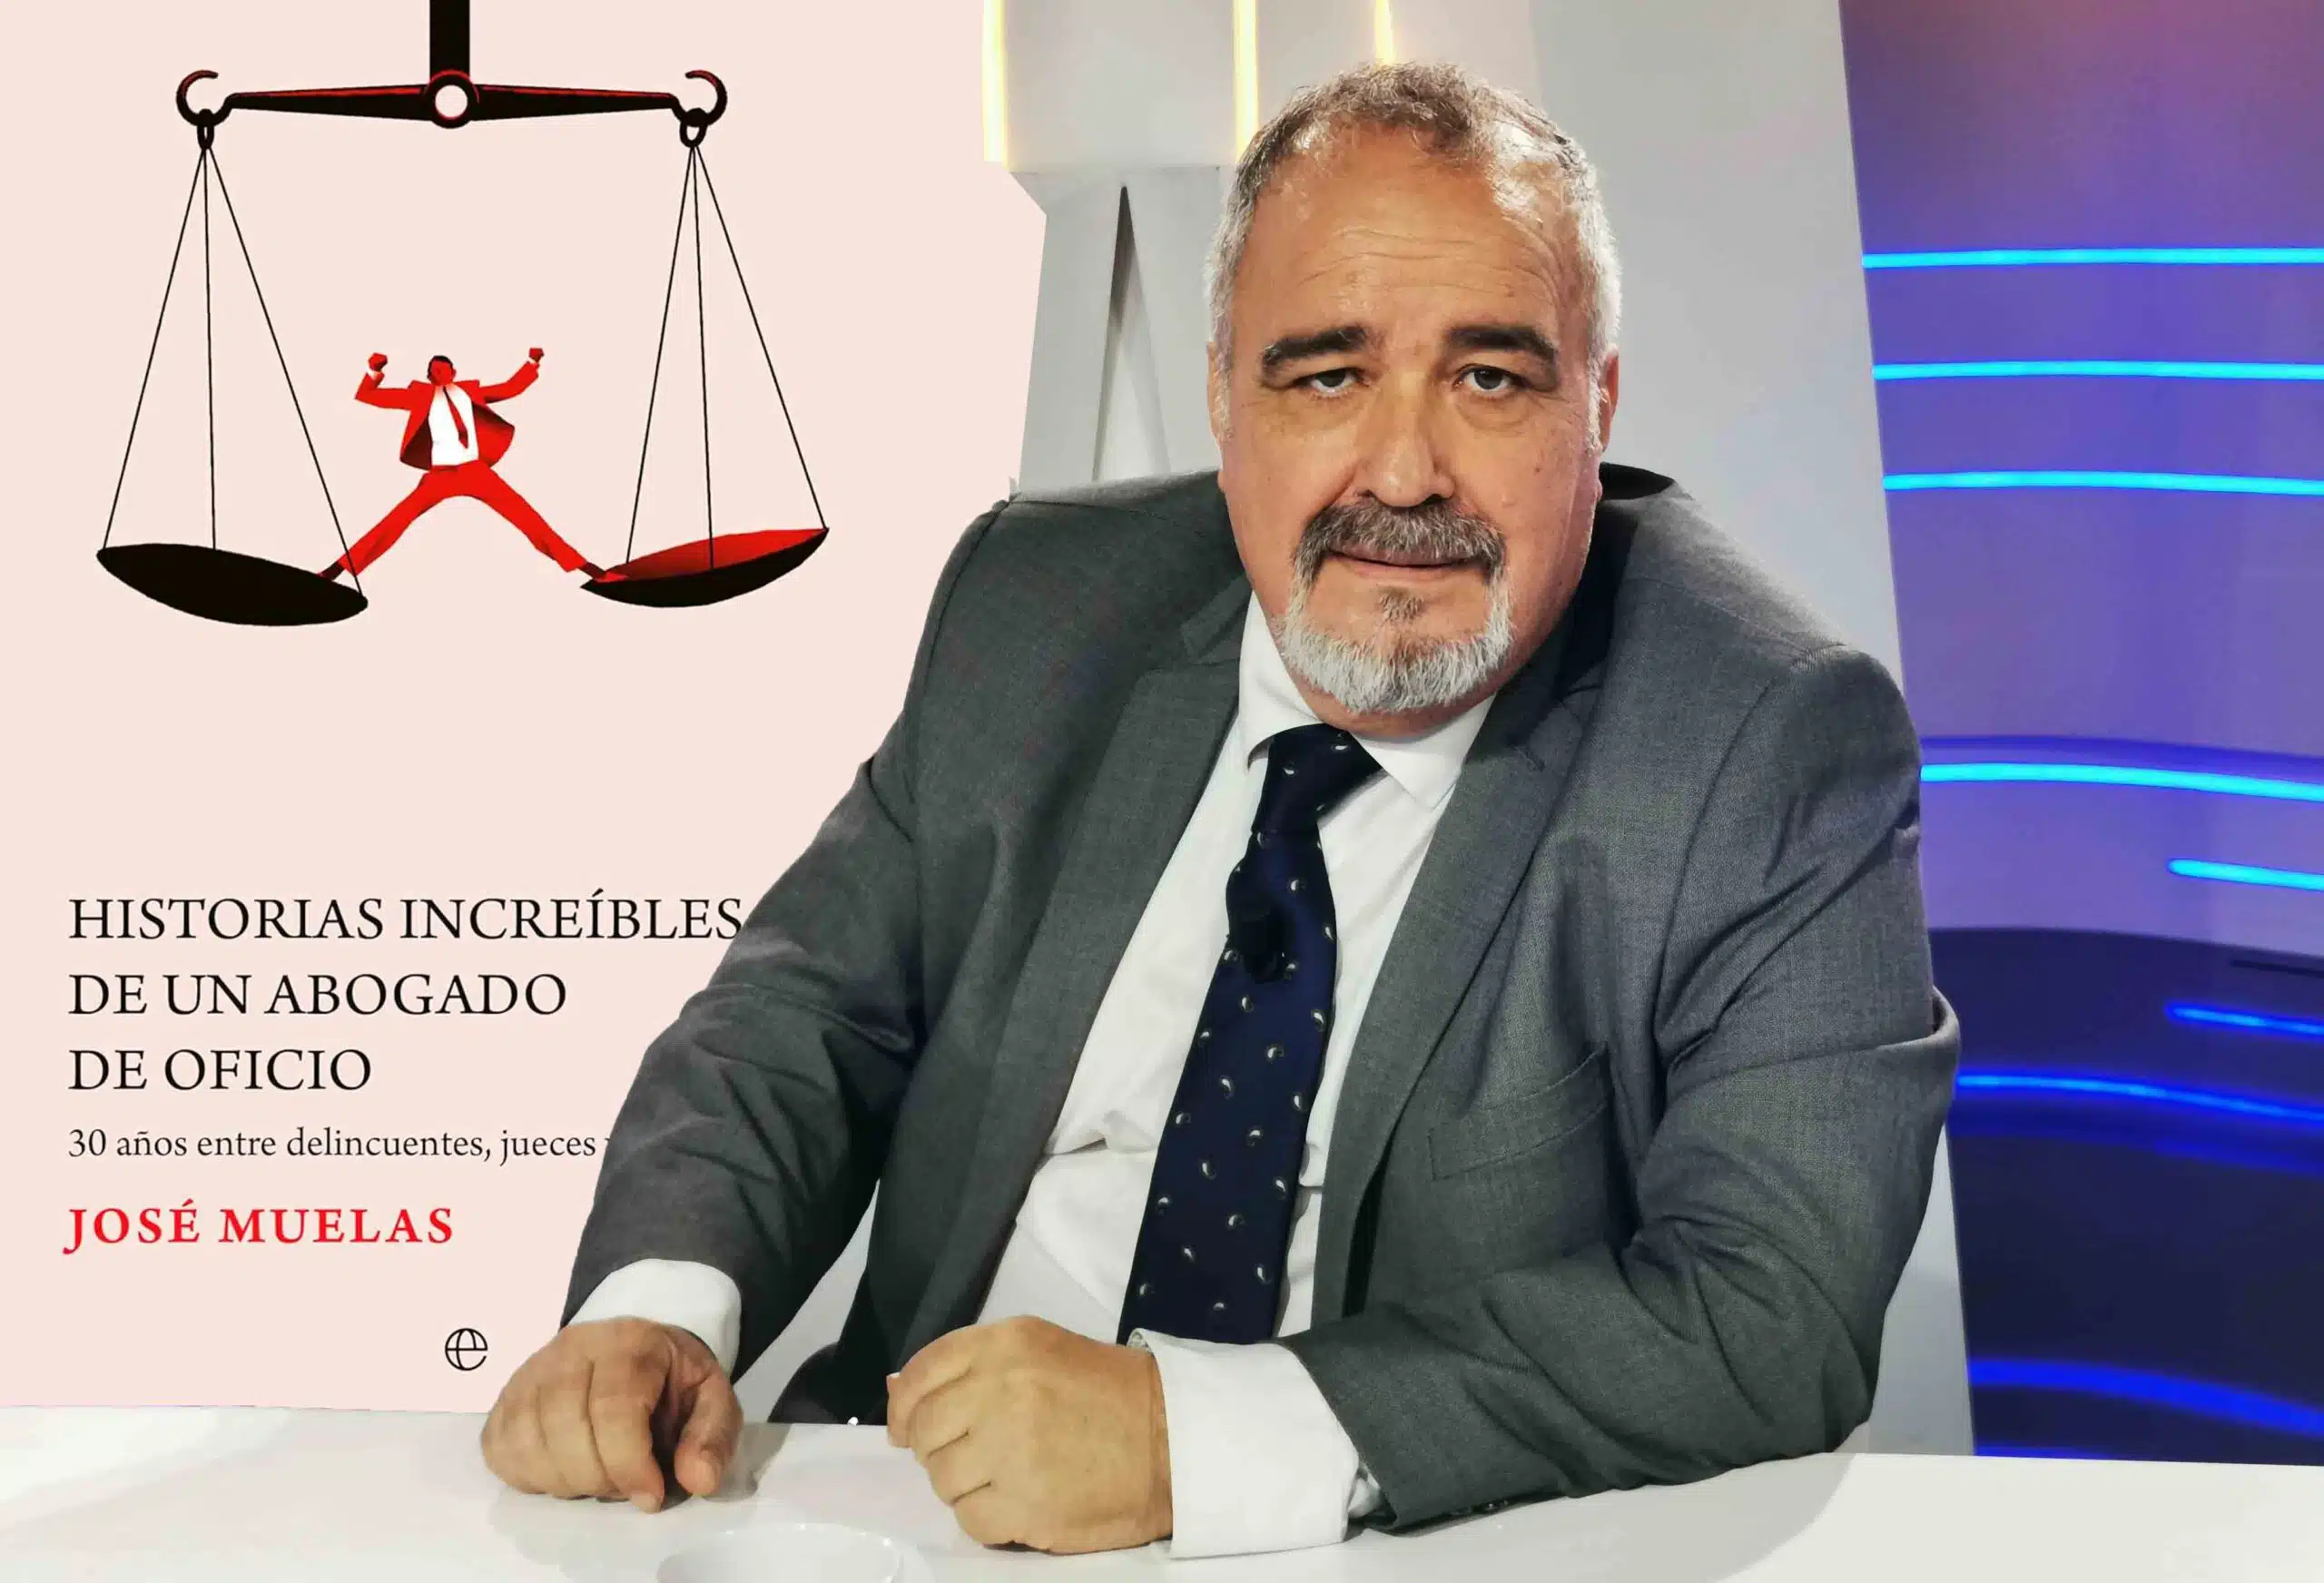 José Muelas: «el turno de oficio es el único trabajo forzado que queda en España»